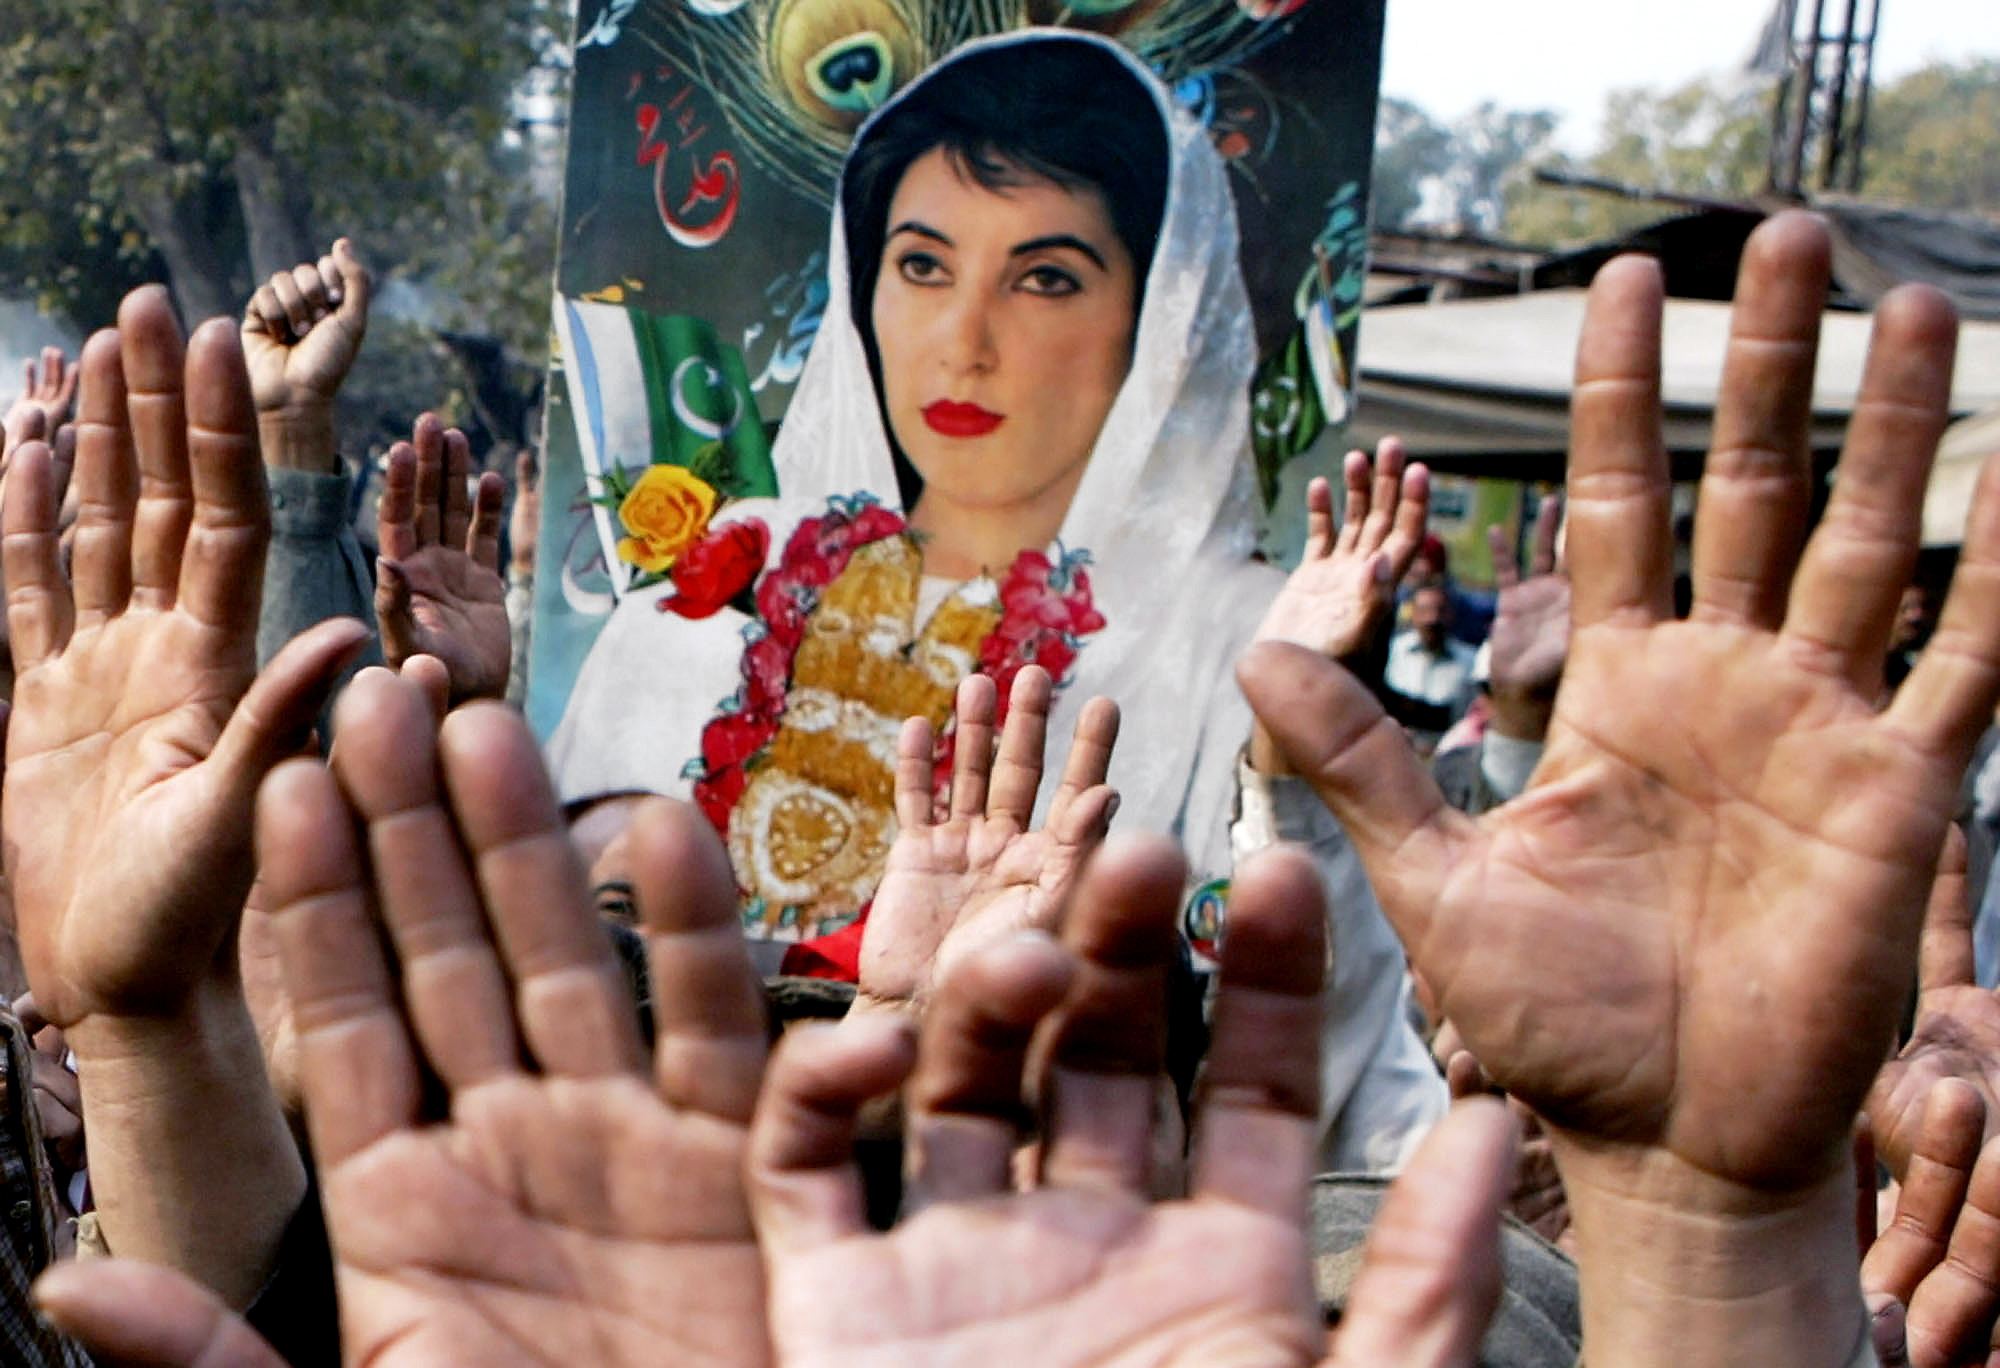 3 janvier 2008 : Des partisans du Parti du peuple pakistanais défilent avec une bannière de leur leader assassiné, Benazir Bhutto, lors d'un rassemblement à Lahore, quelques jours après sa mort. (AP Images/K M Chaudary)'s Party march with a banner of their slain leader, Benazir Bhutto, during a rally in Lahore, days after her death. (AP Images/K M Chaudary)